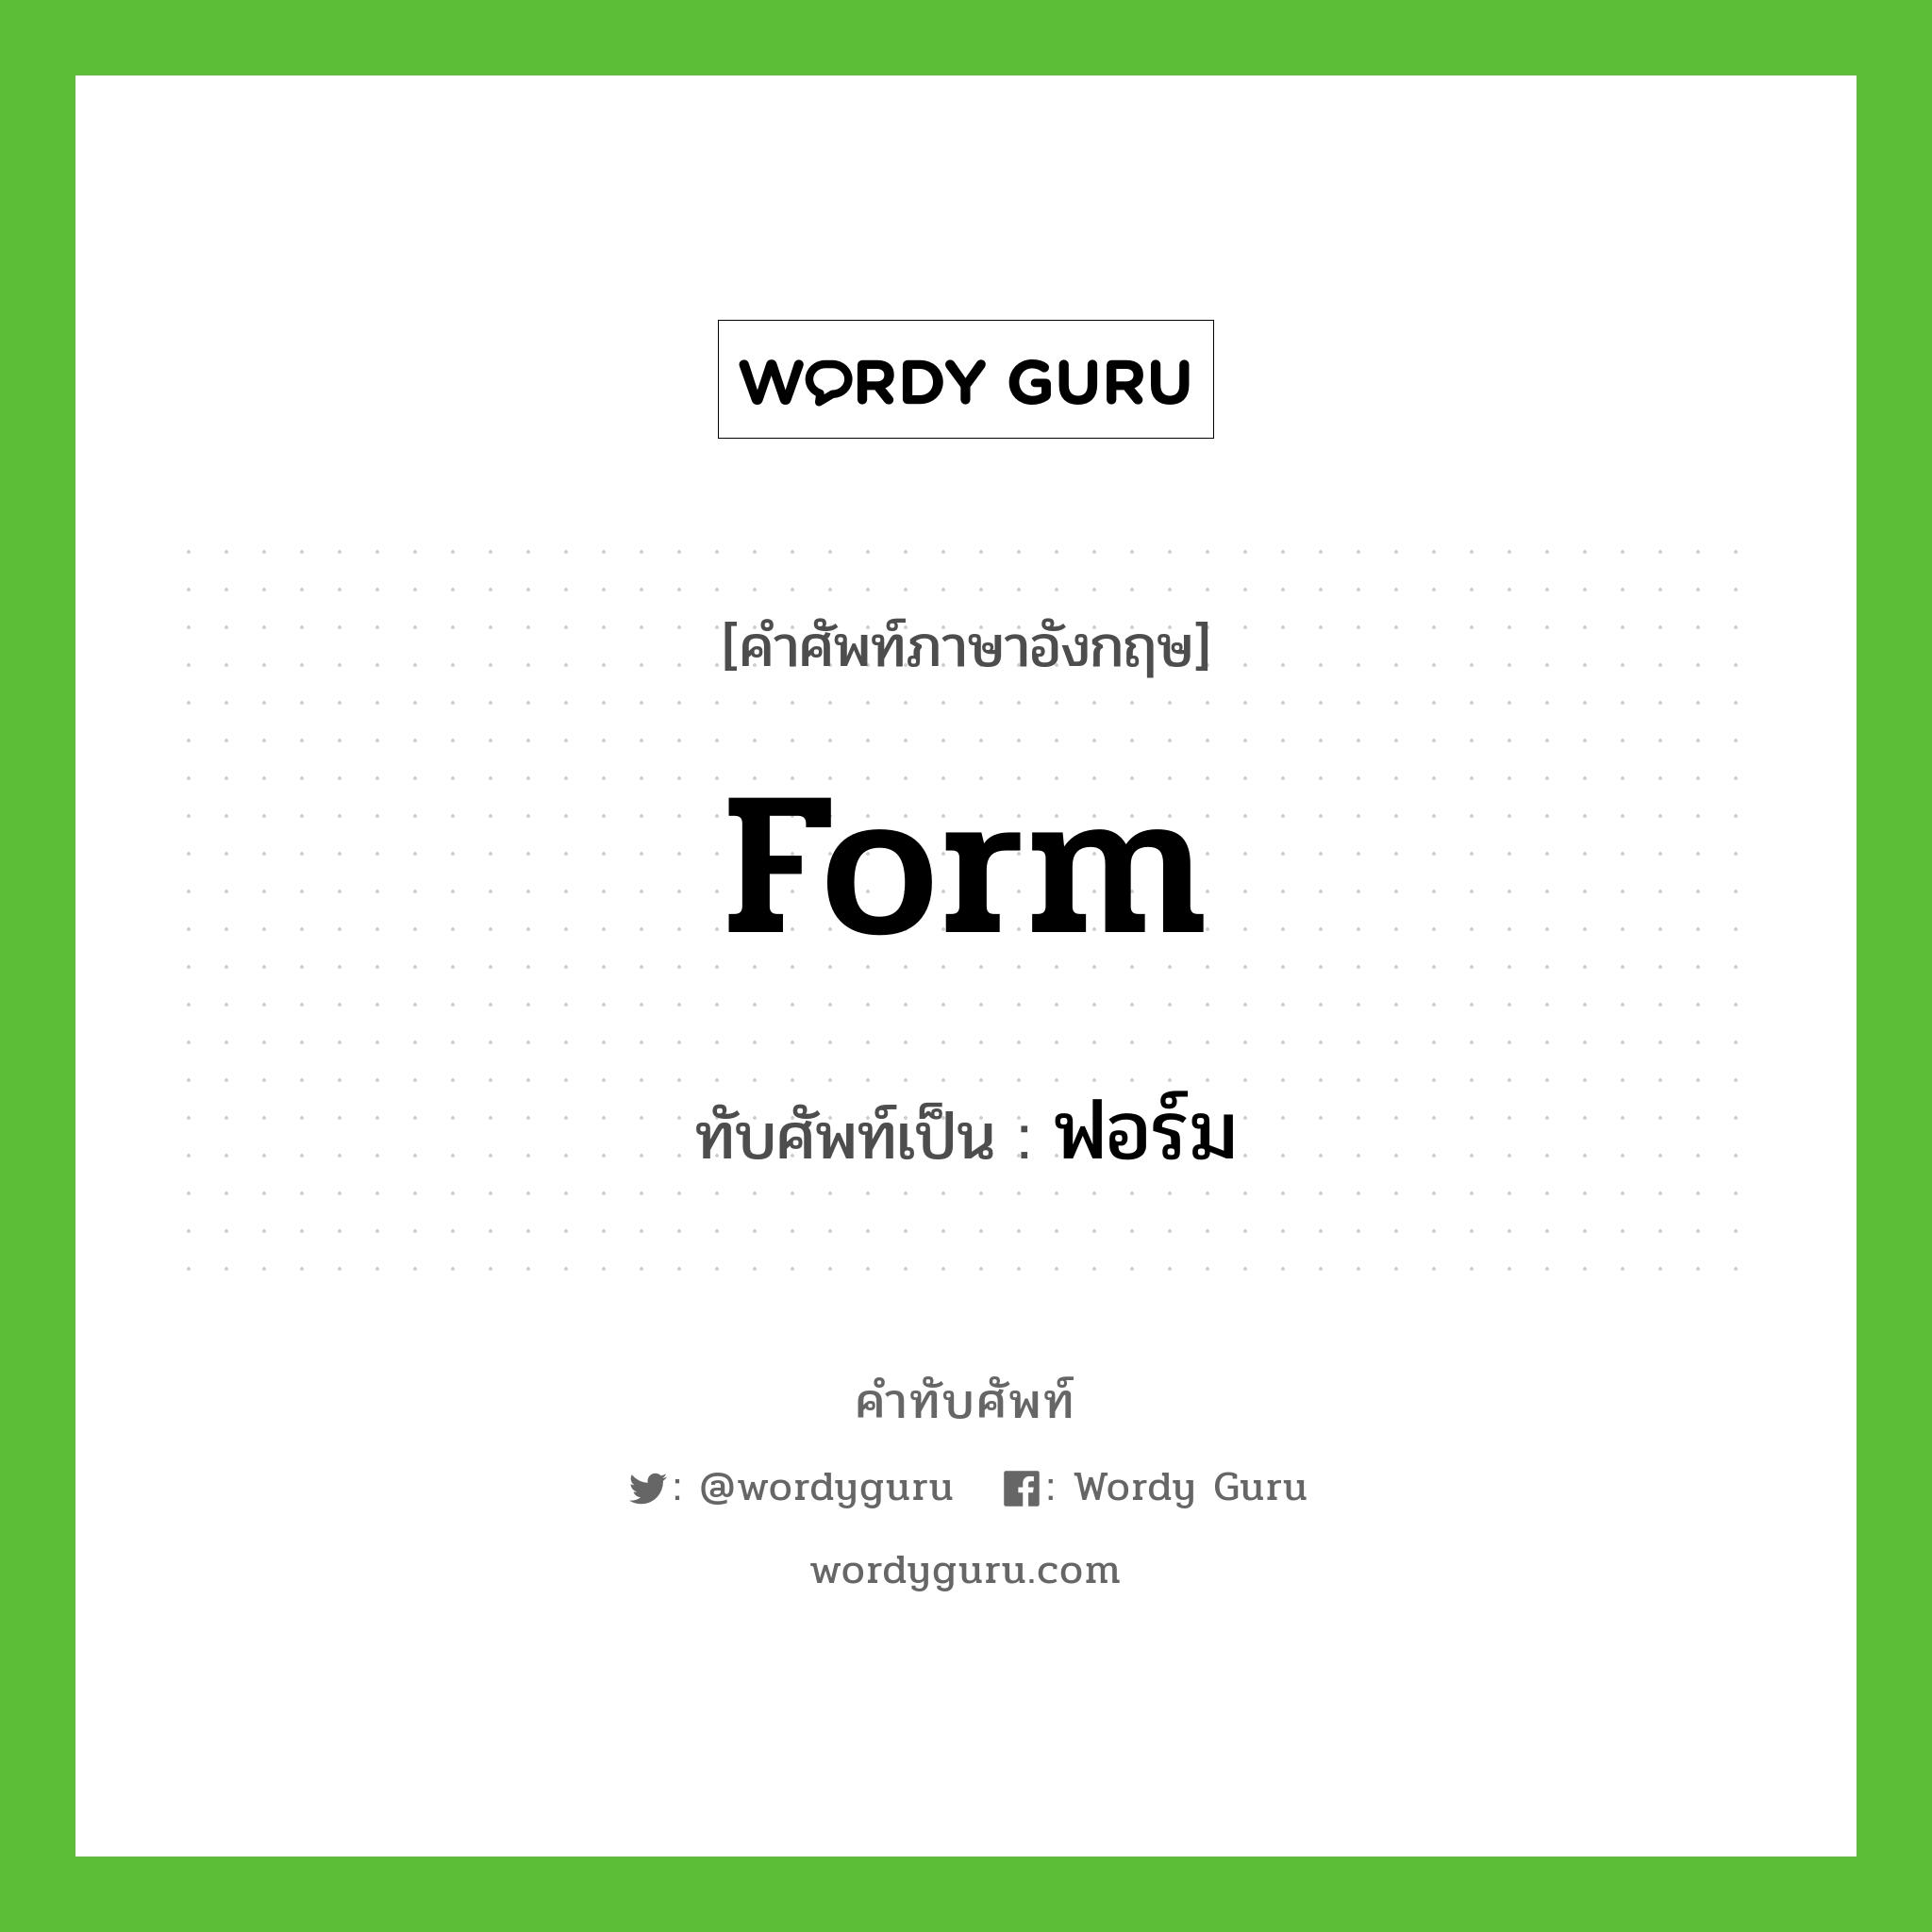 form เขียนเป็นคำไทยว่าอะไร?, คำศัพท์ภาษาอังกฤษ form ทับศัพท์เป็น ฟอร์ม